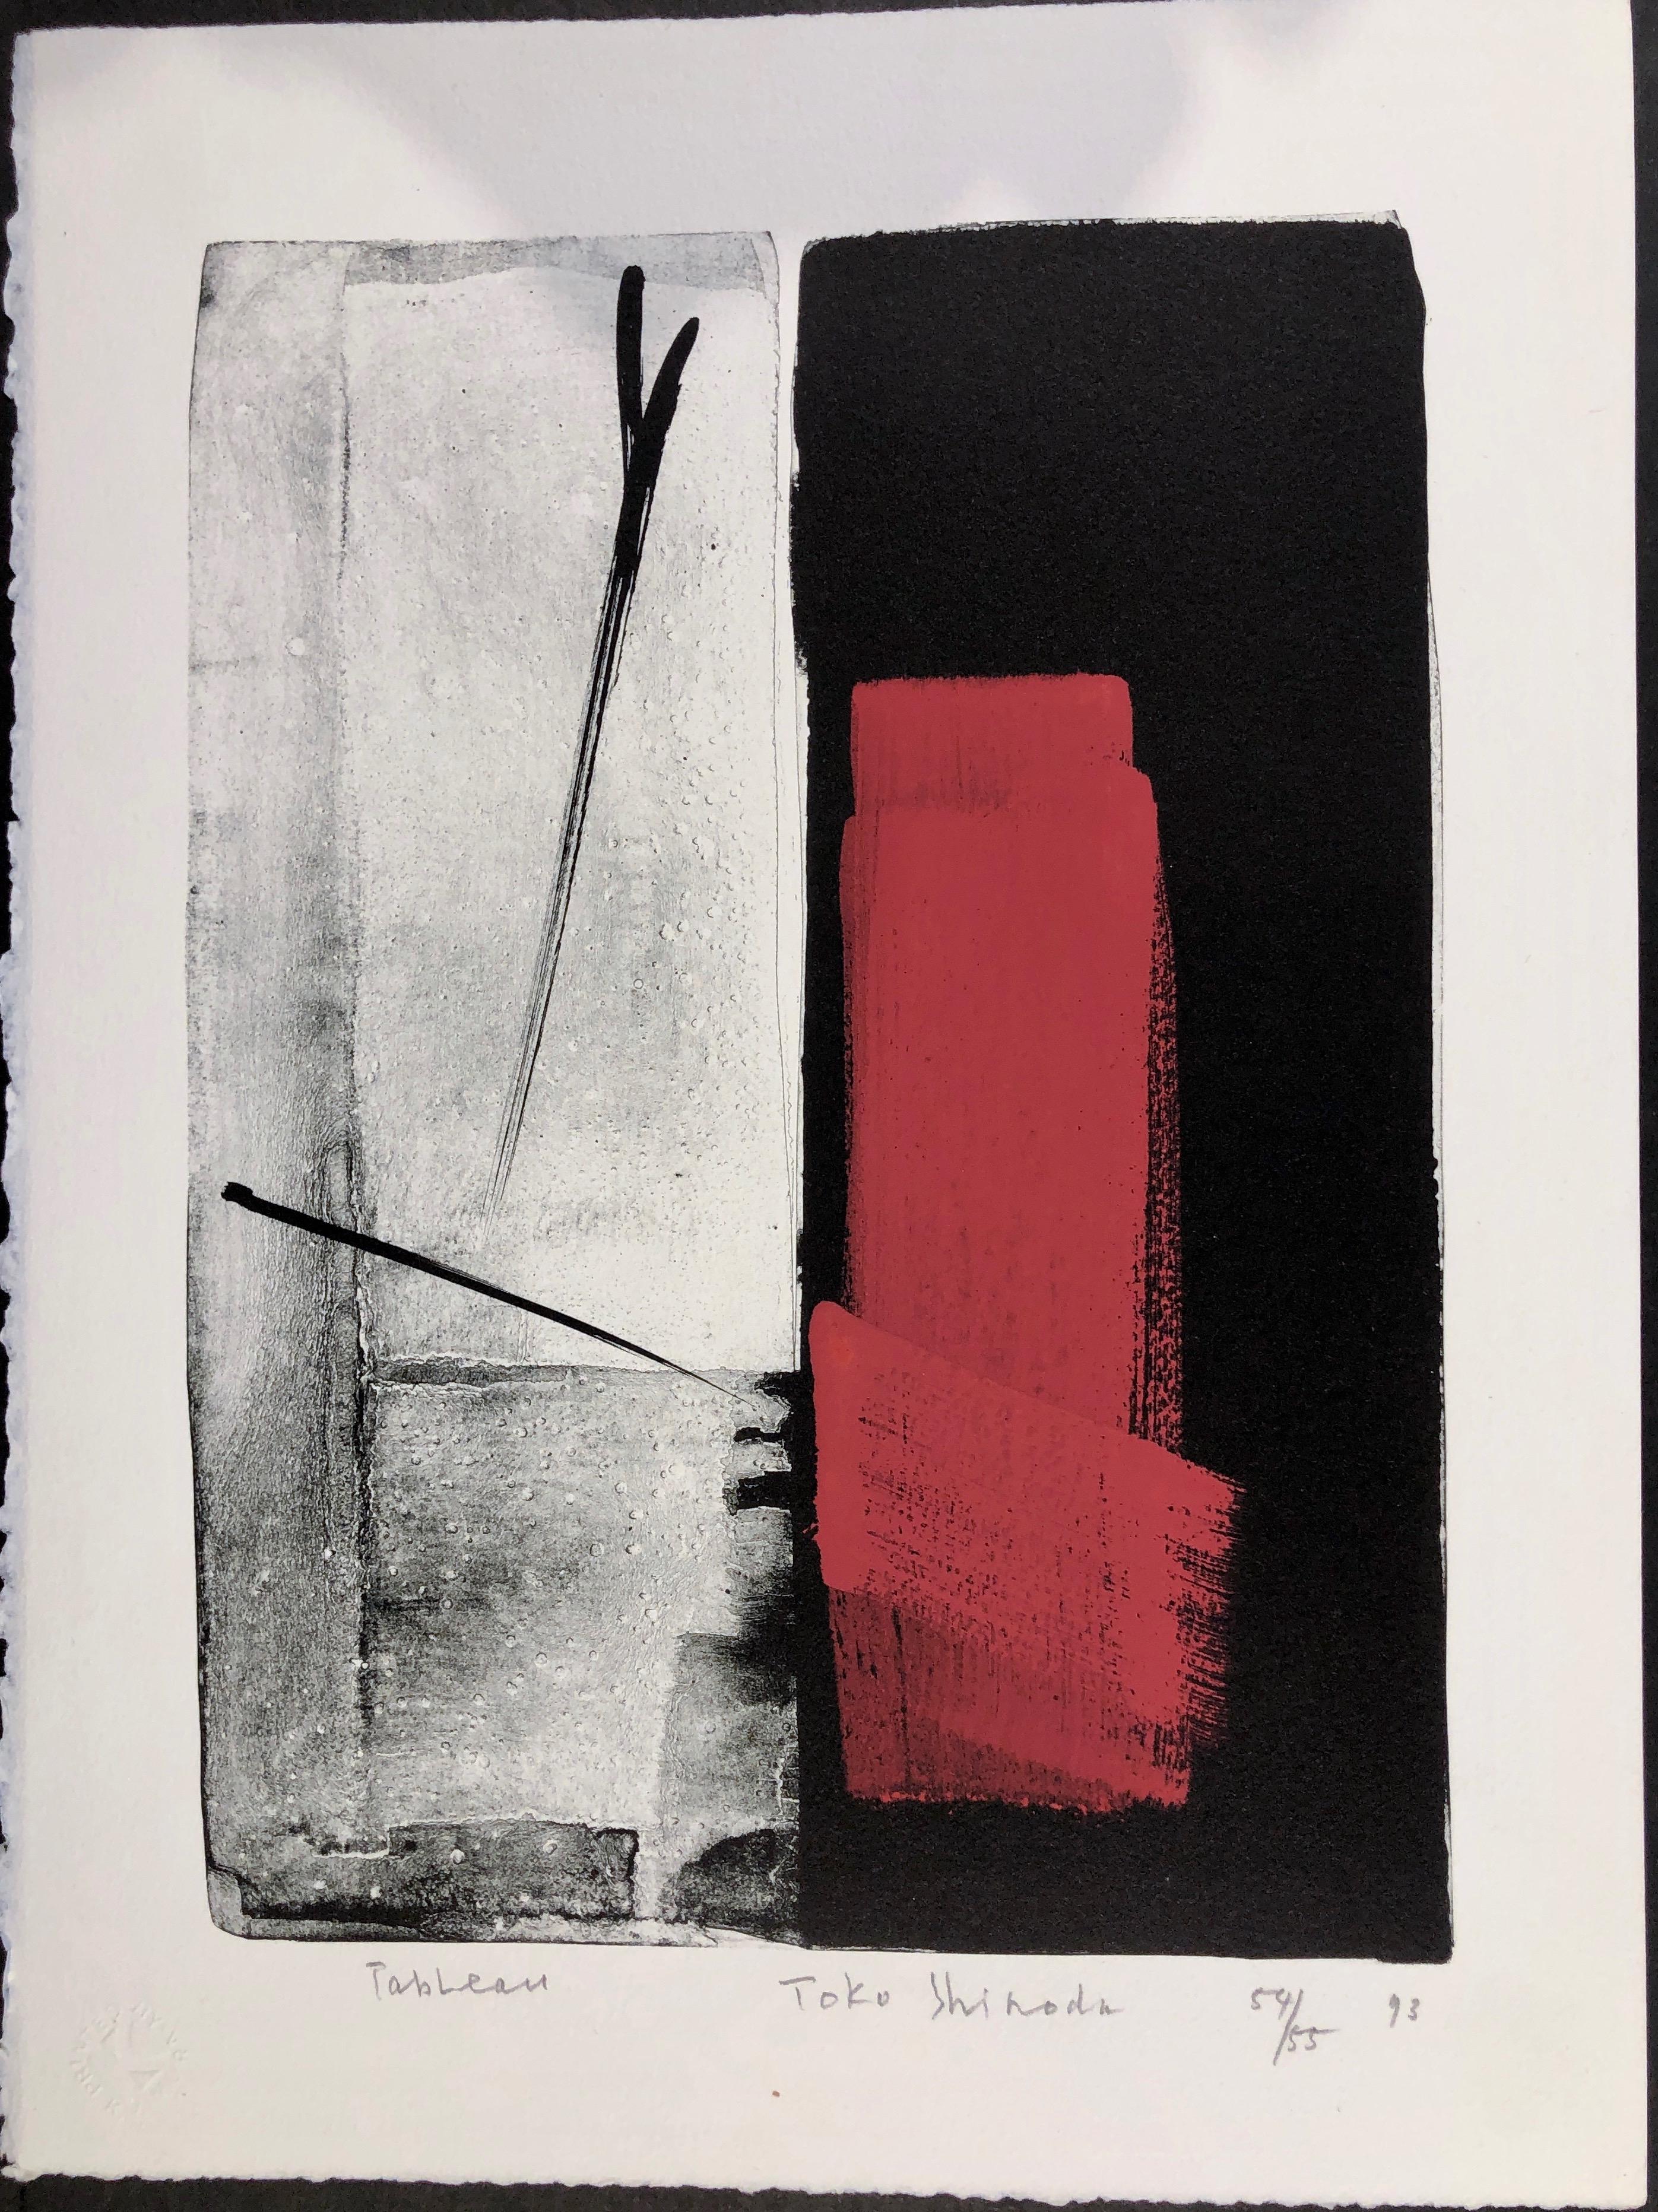 Toko Shinoda Abstract Print – Tischau, japanische Lithographie in limitierter Auflage, schwarz, weiß, rot, signiert, nummeriert